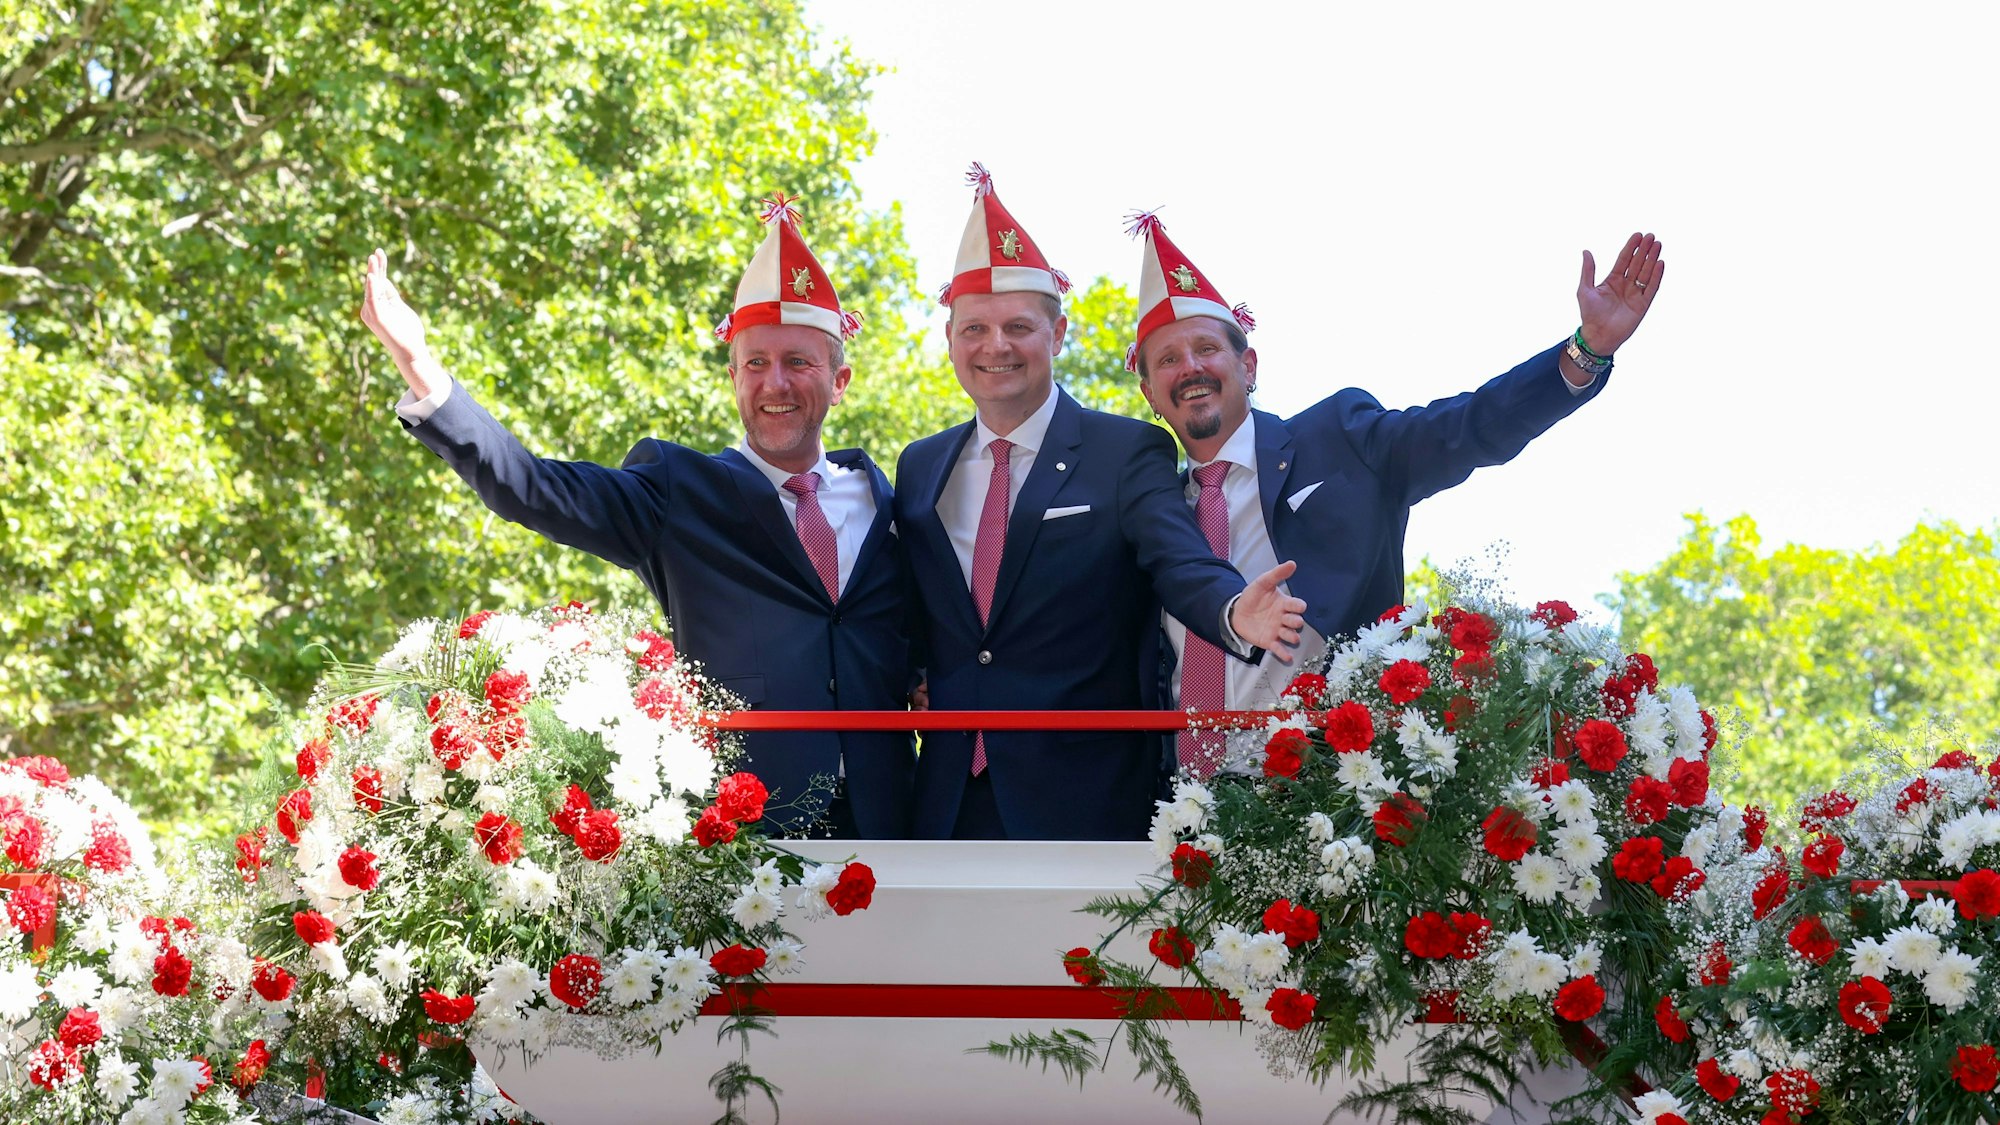 Bei der Vorstellung des designierten Kölner Dreigestirns 2023
sind André Fahnenbruck , Boris Müller und Marco Schneefeld zu sehen. Sie stehen einigen Blumen und halten die Arme in die Luft.